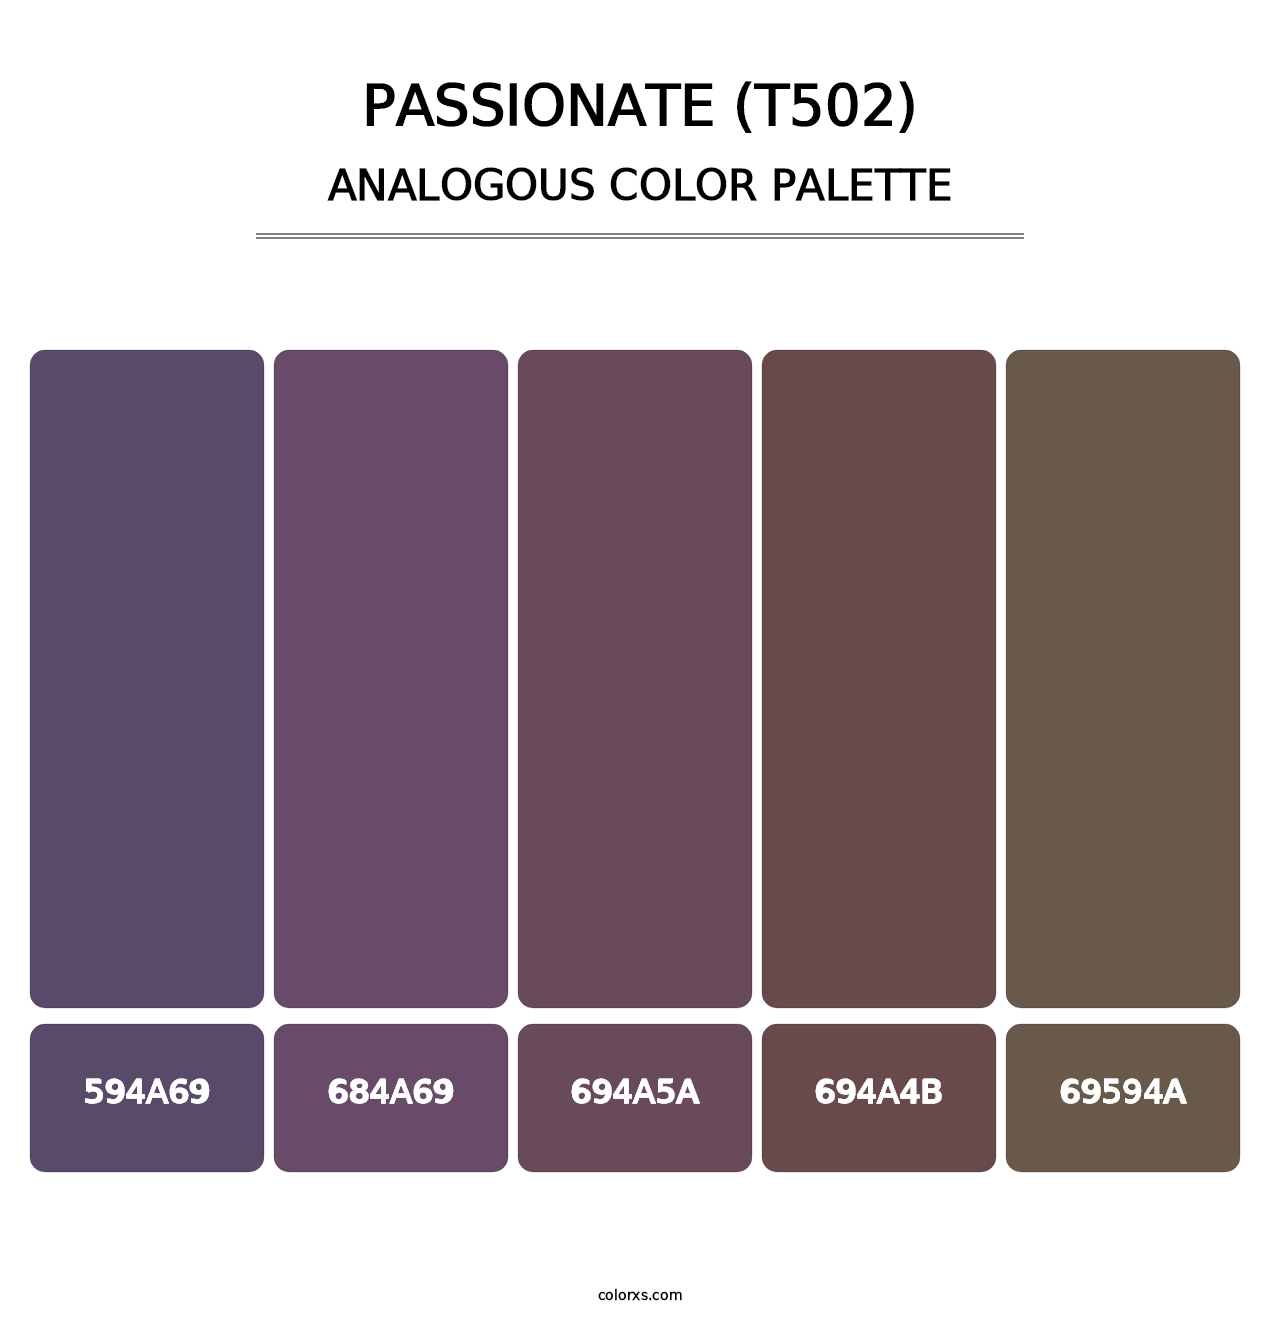 Passionate (T502) - Analogous Color Palette